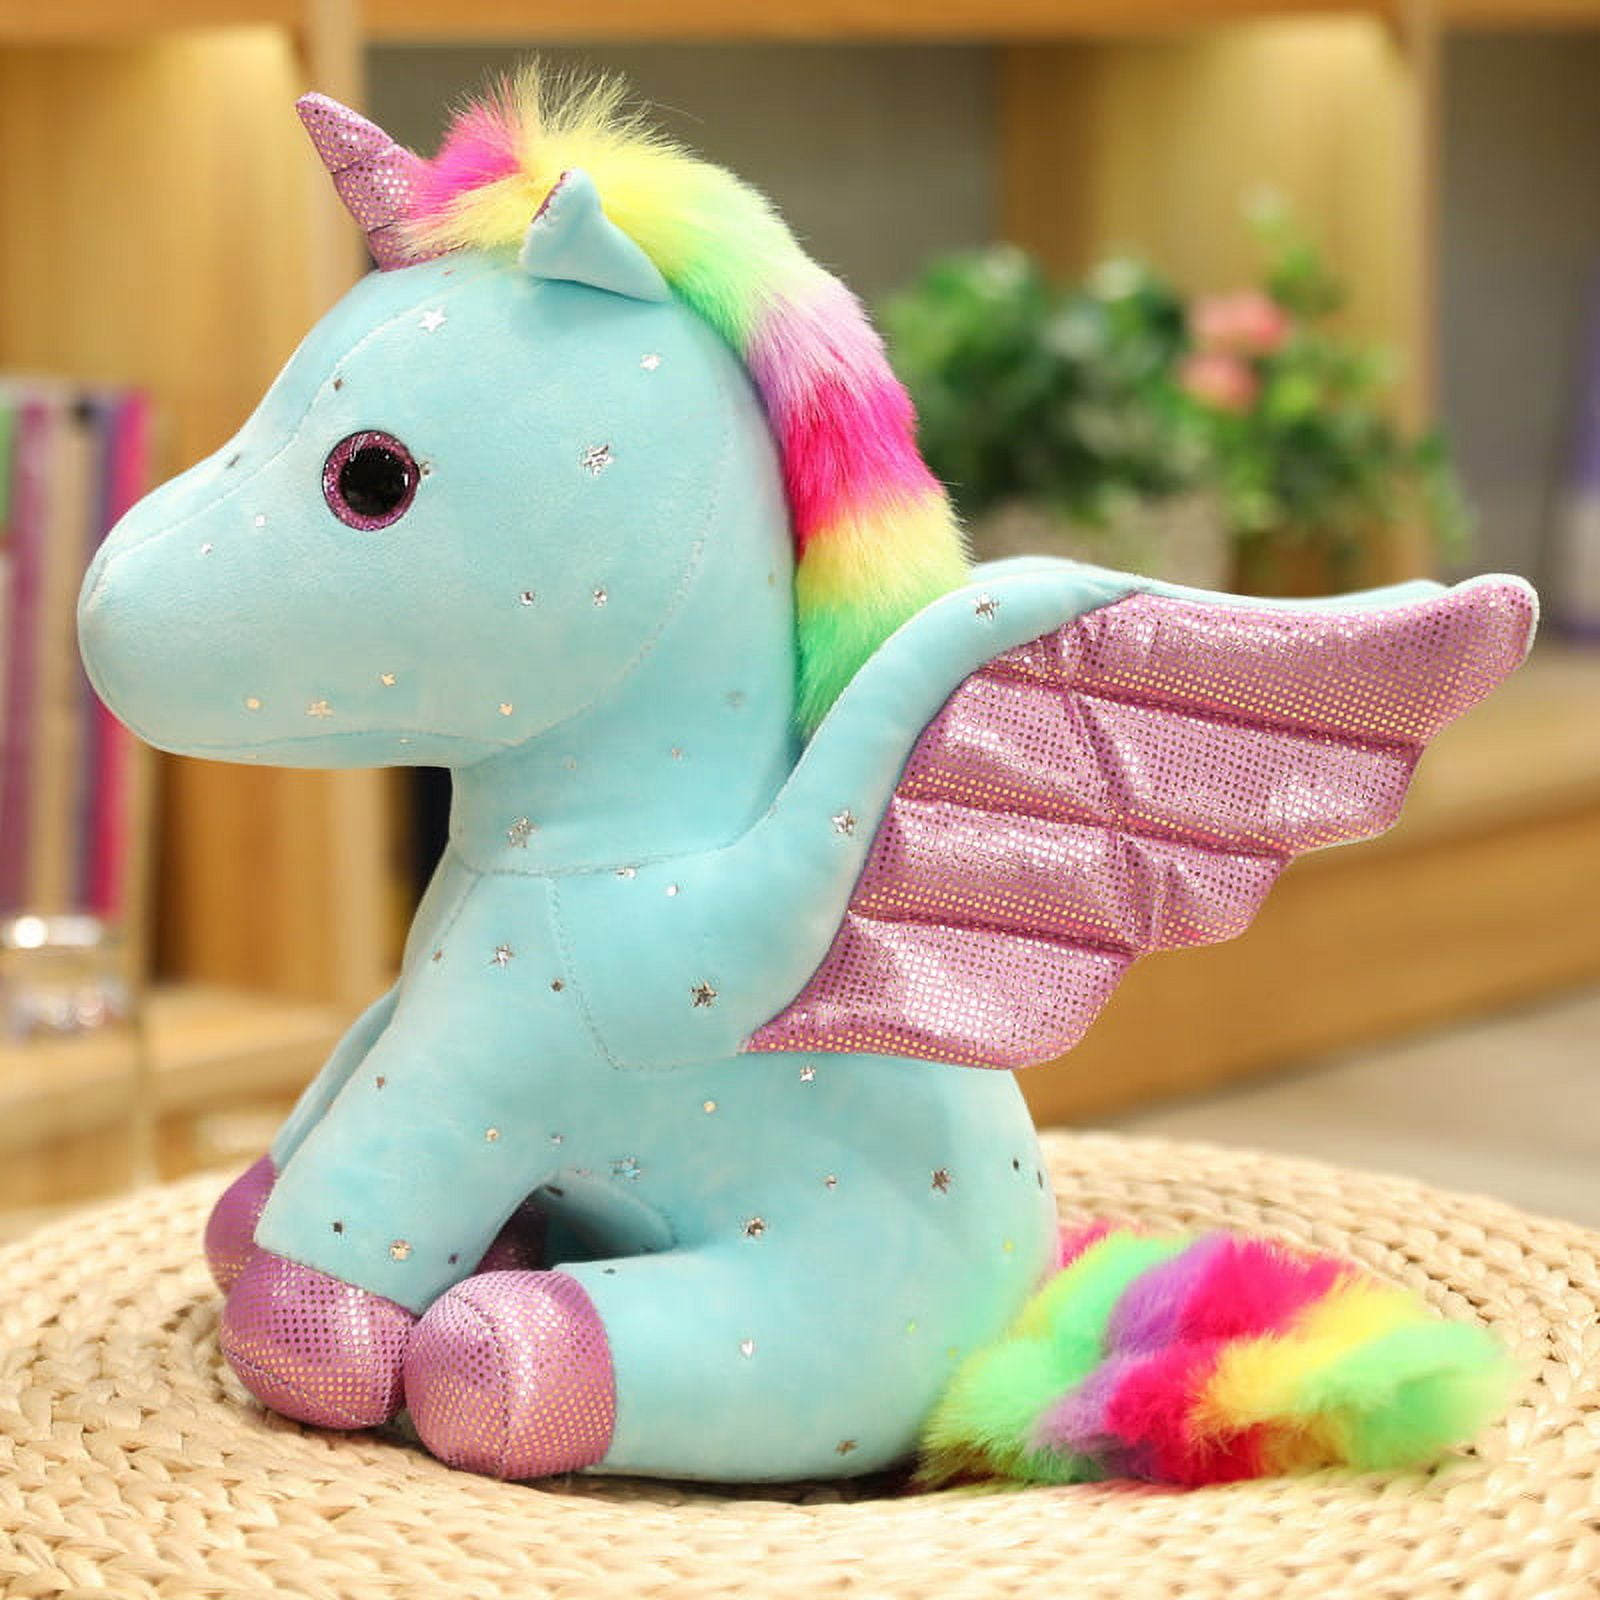  Unicorn Toys for Girls Age 6-8, Unicorn Stuffed